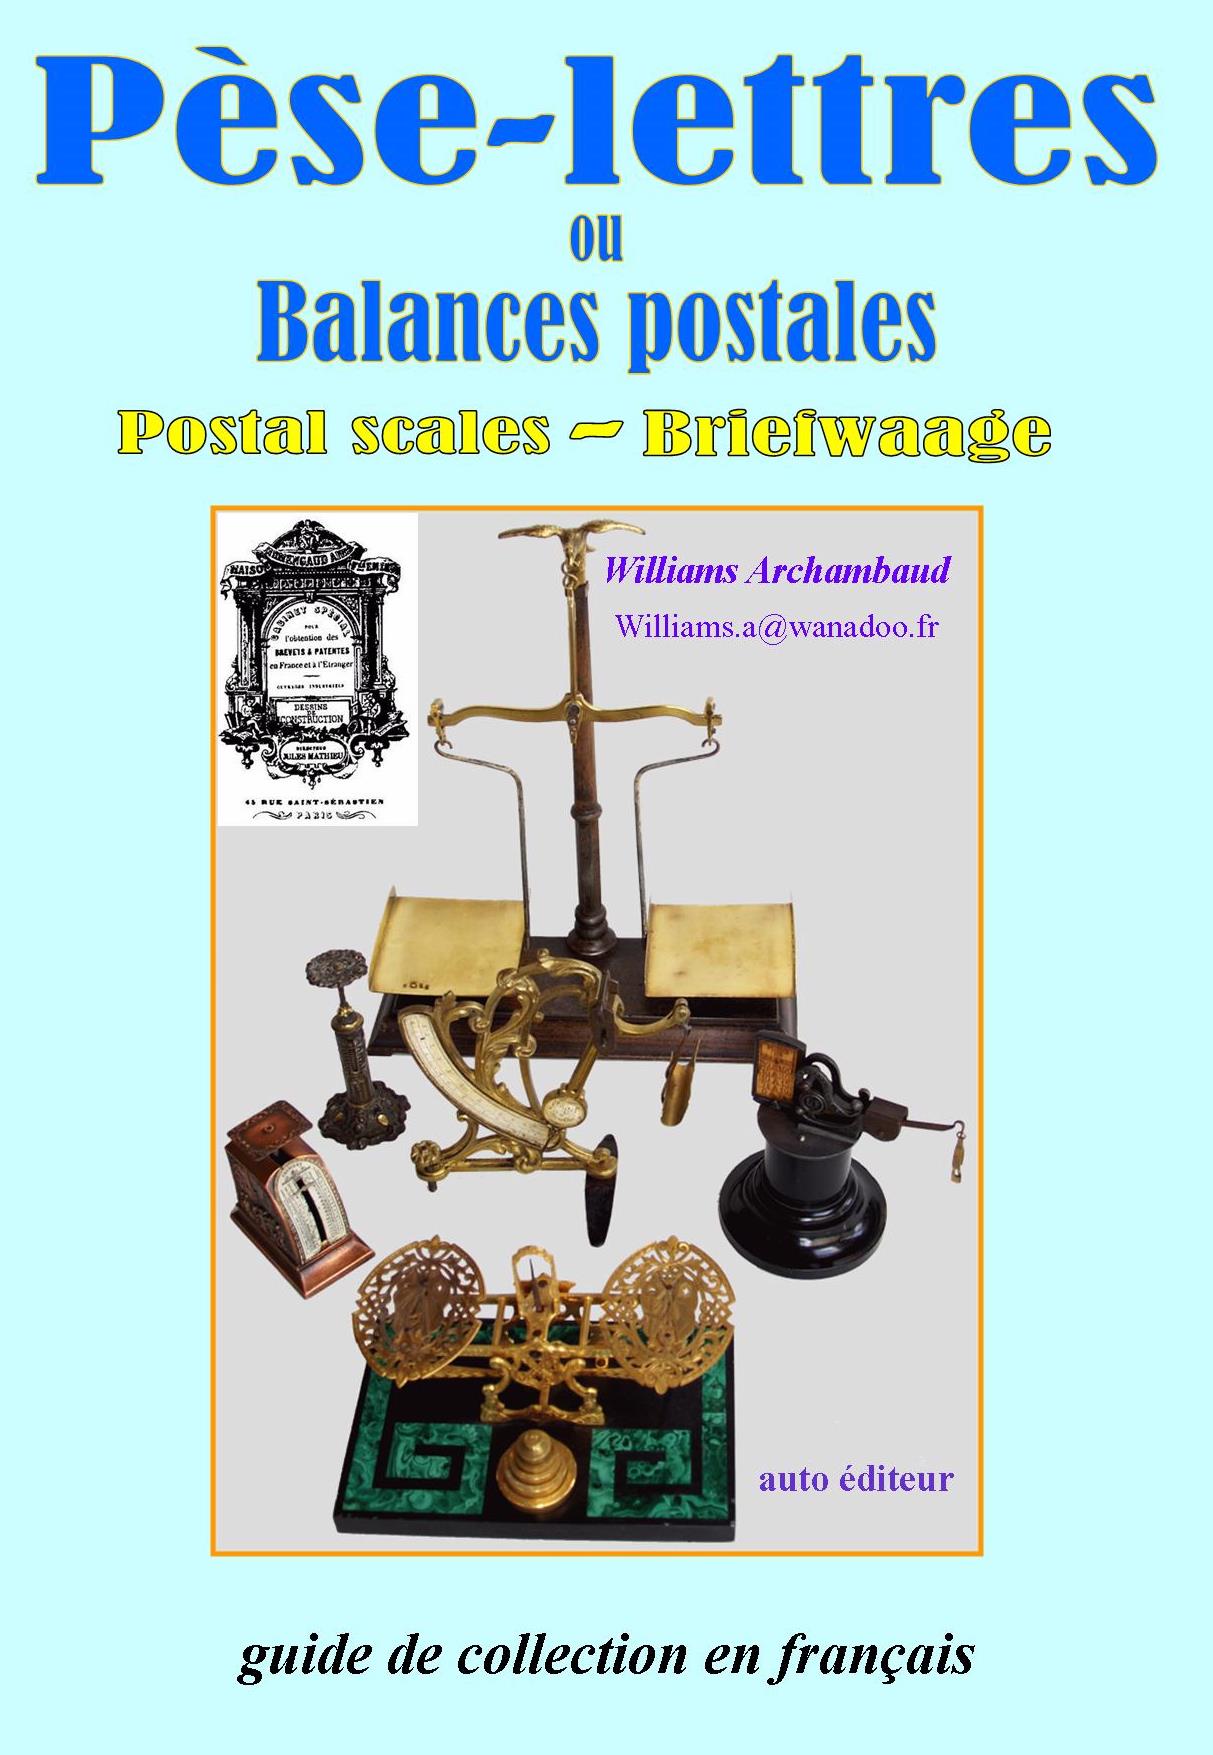 P��se-lettres ou balances postales p. 1